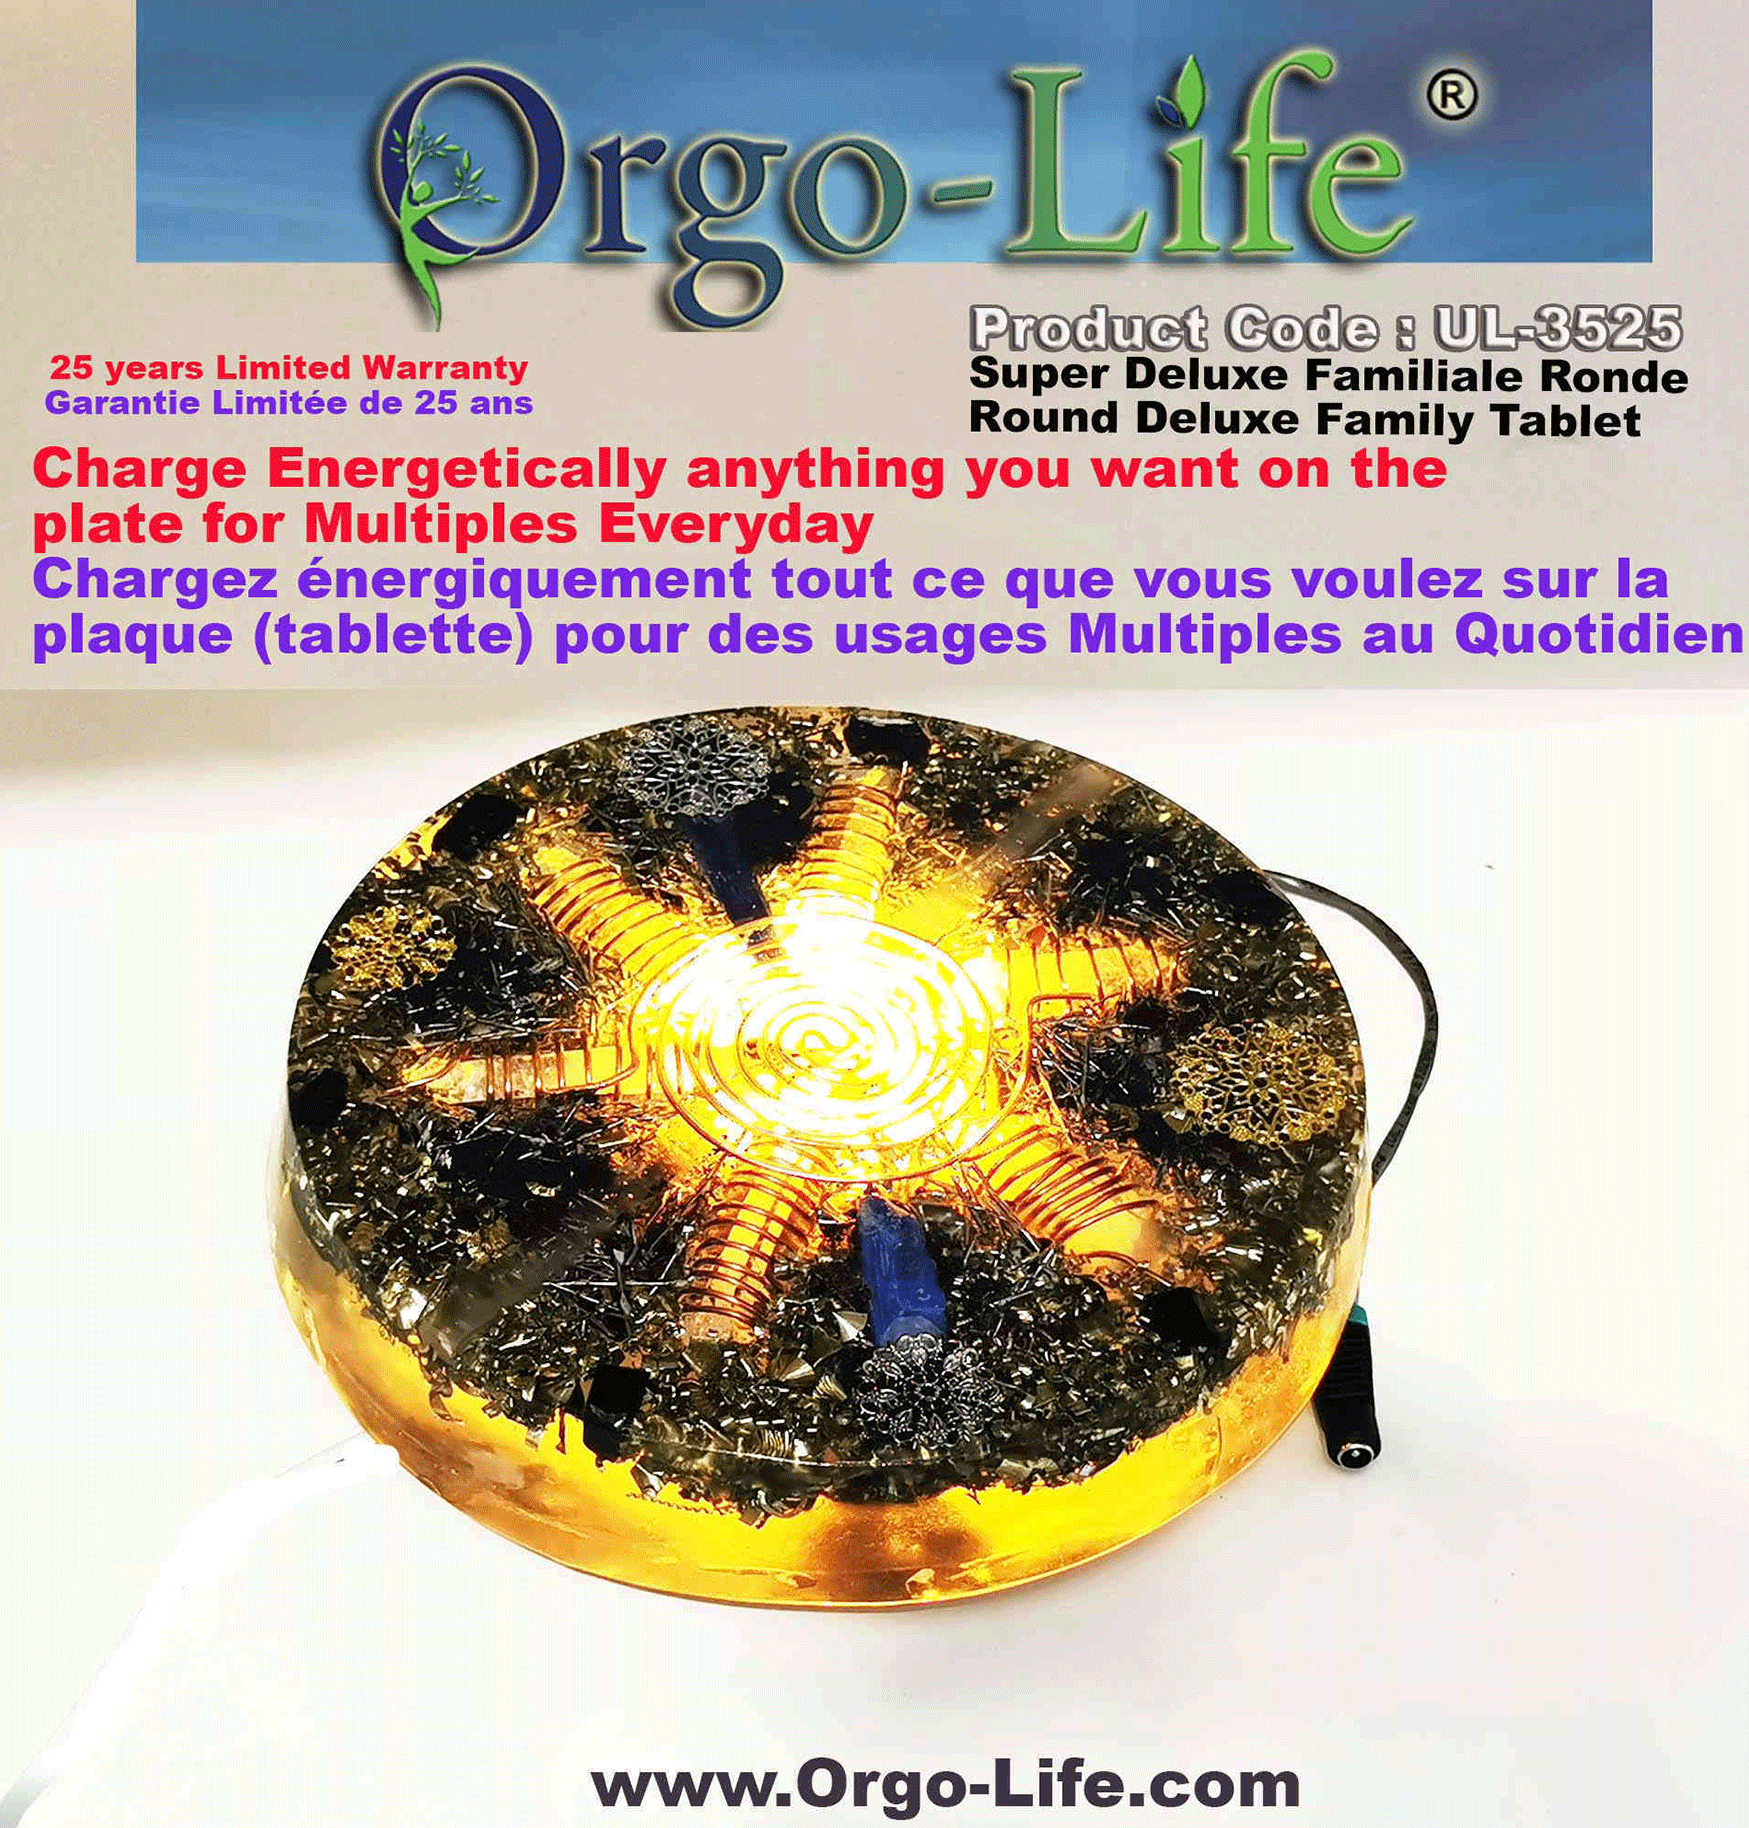 Tablette ronde familiale, ronde (7 Grands Cristaux Himalayen) 8.75'' diamètre UL-3525 Orgo-Life